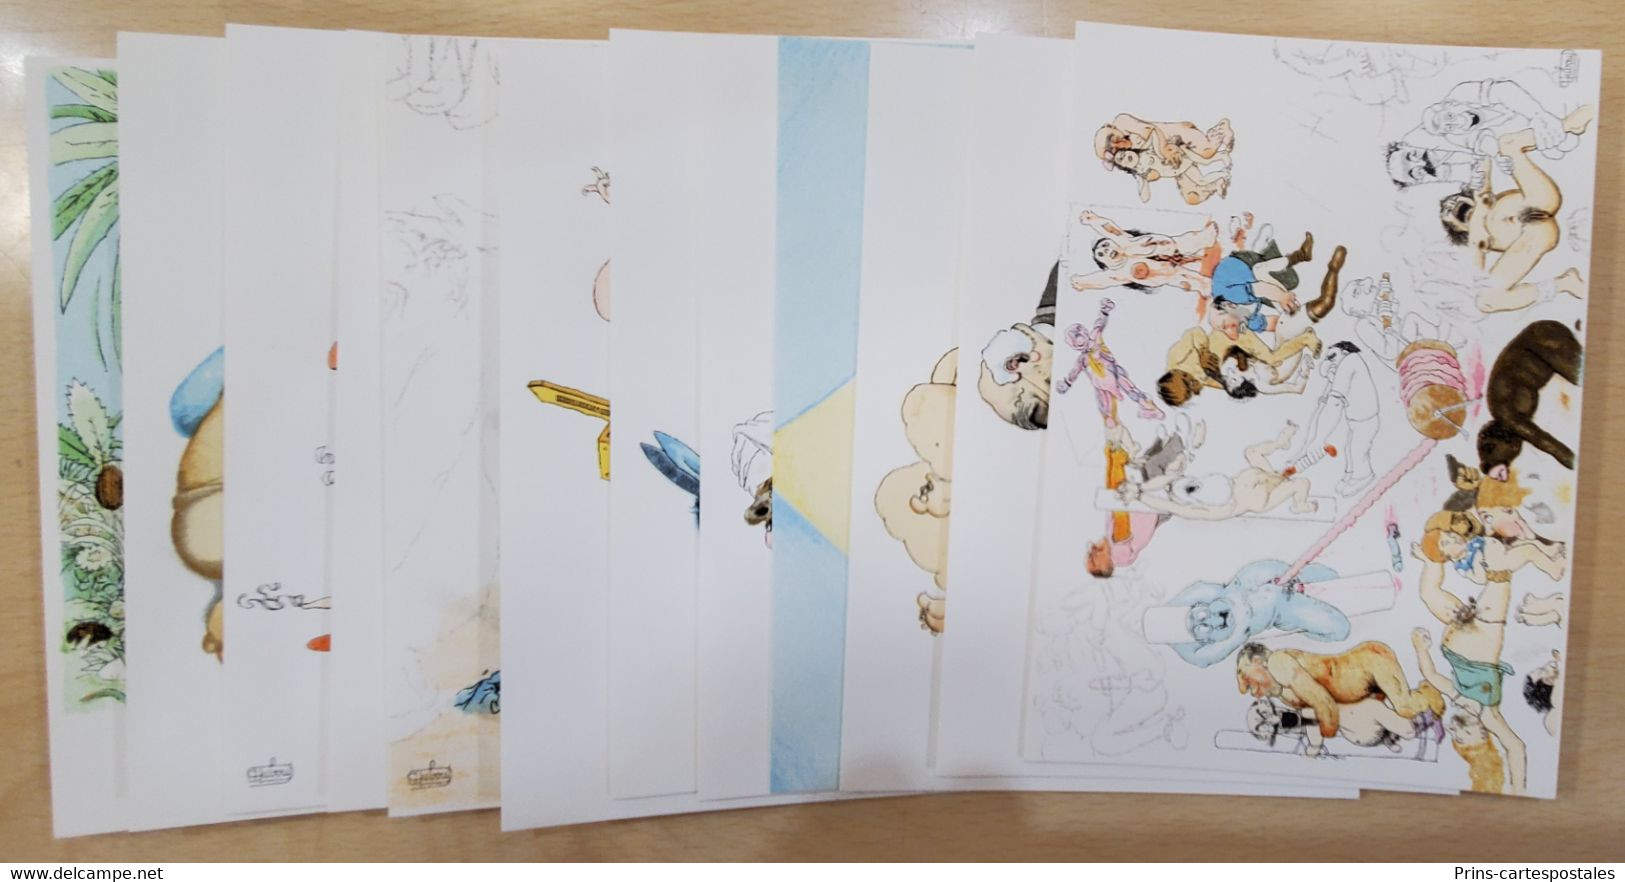 12 Cartes Postales Illustrées Par Dubout En Litographie Mourlot Tirage Limité 300 Exemplaires - Coffret Paul Figarola - Dubout